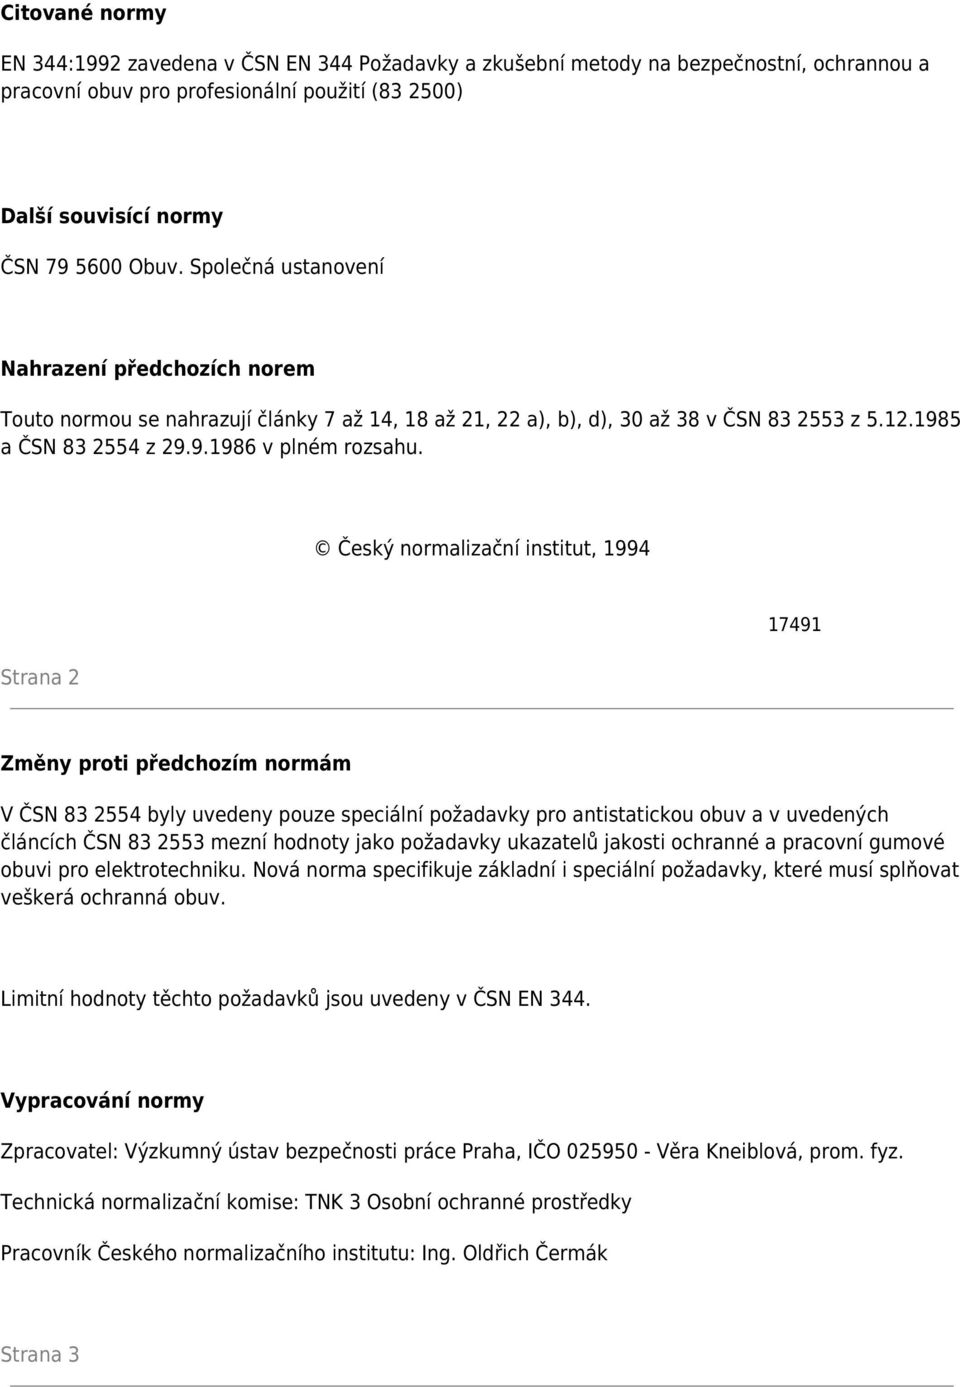 Český normalizační institut, 1994 Strana 2 17491 Změny proti předchozím normám V ČSN 83 2554 byly uvedeny pouze speciální požadavky pro antistatickou obuv a v uvedených článcích ČSN 83 2553 mezní